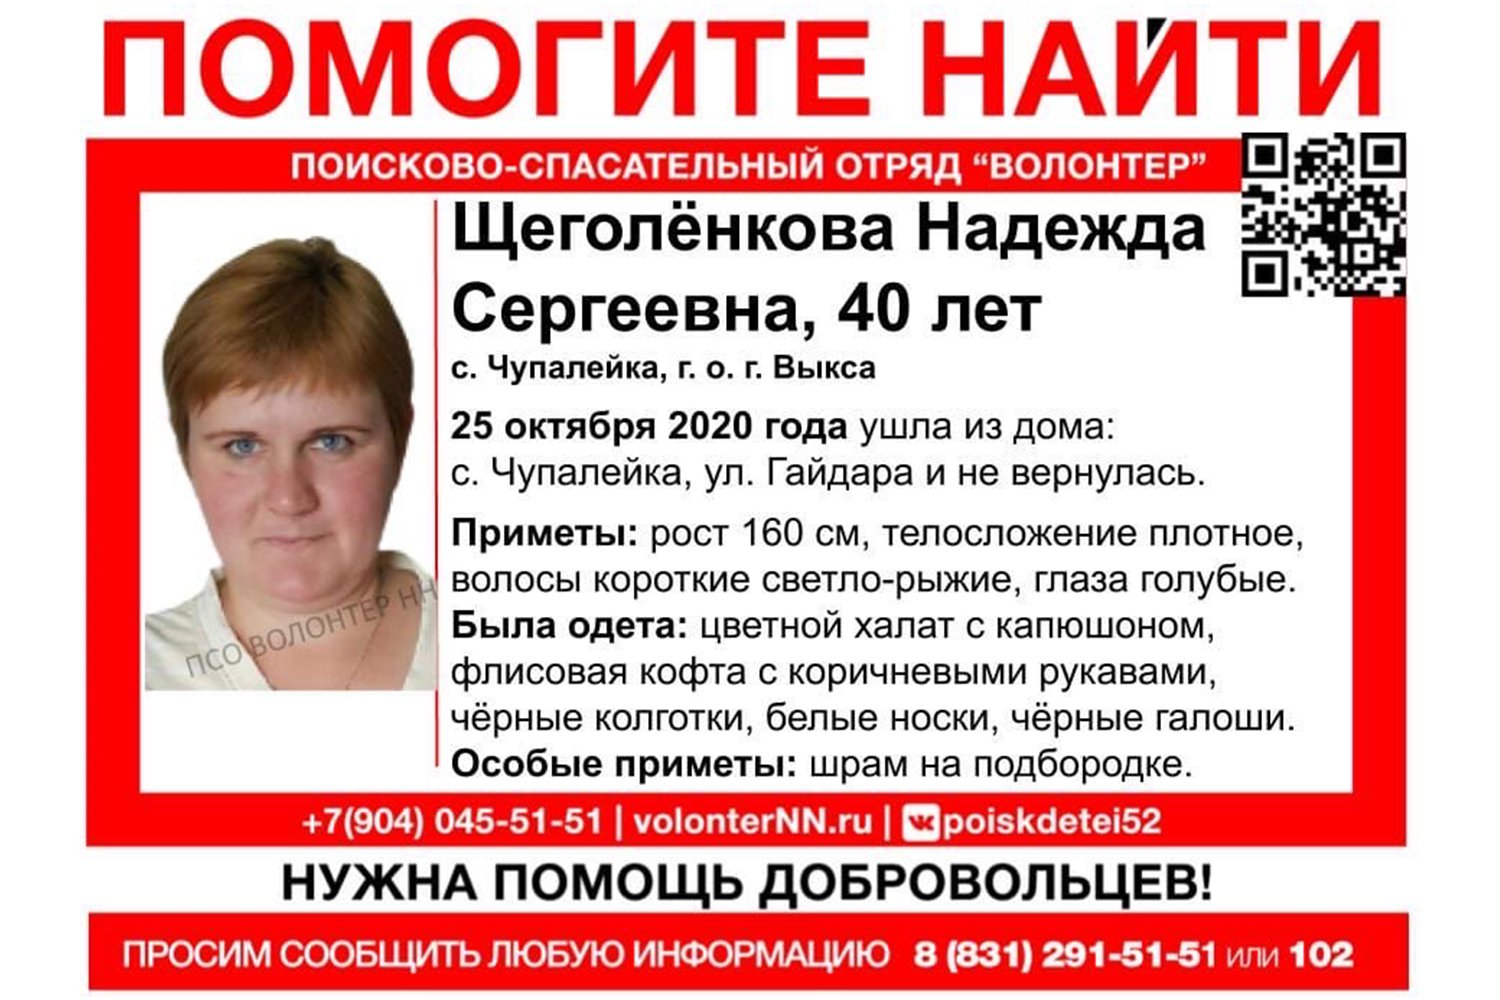 Волонтёры объявили поиск 40-летней Надежды Щеголёнковой